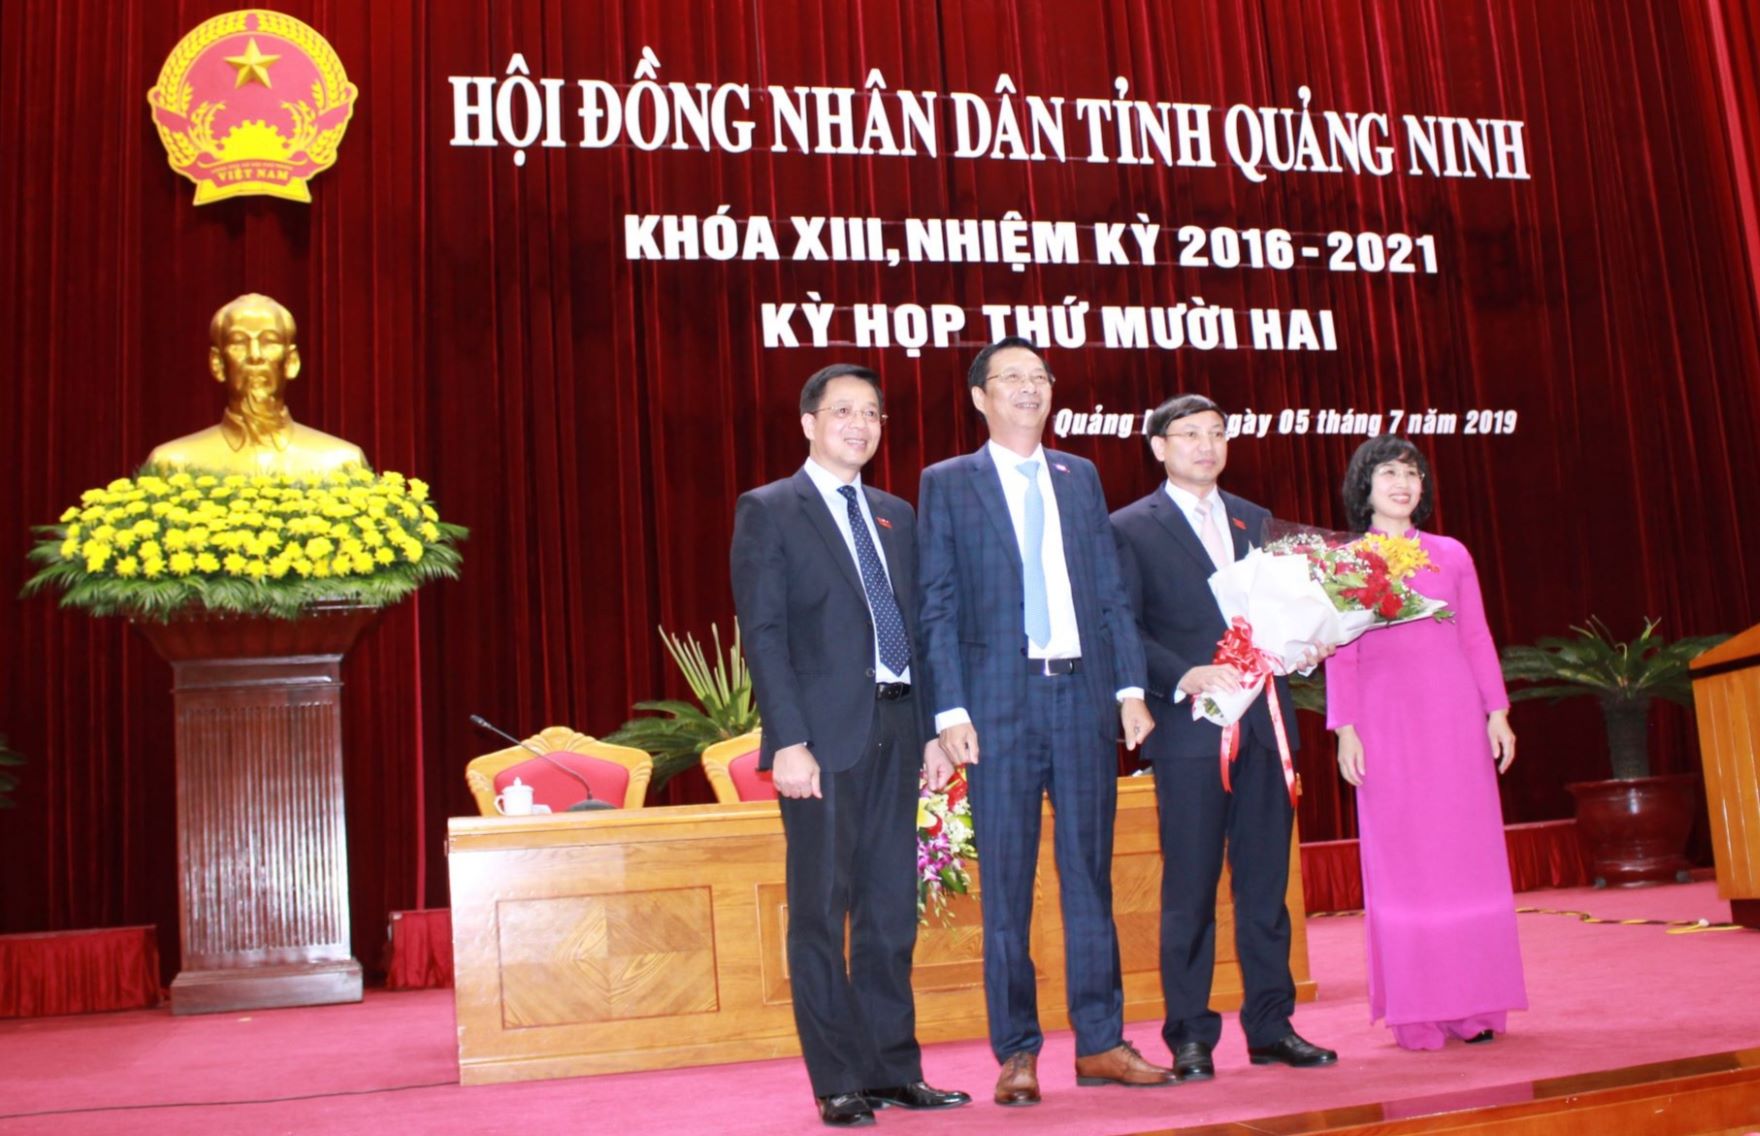 Lãnh đạo tỉnh tặng hoa chúc mừng ông Nguyễn Xuân Ký, đứng thứ 2 từ phải sang được bầu giữ chức Chủ tịch HĐND tỉnh Quảng Ninh nhiệm kỳ 2016-2021. Ảnh Thanh Tân.